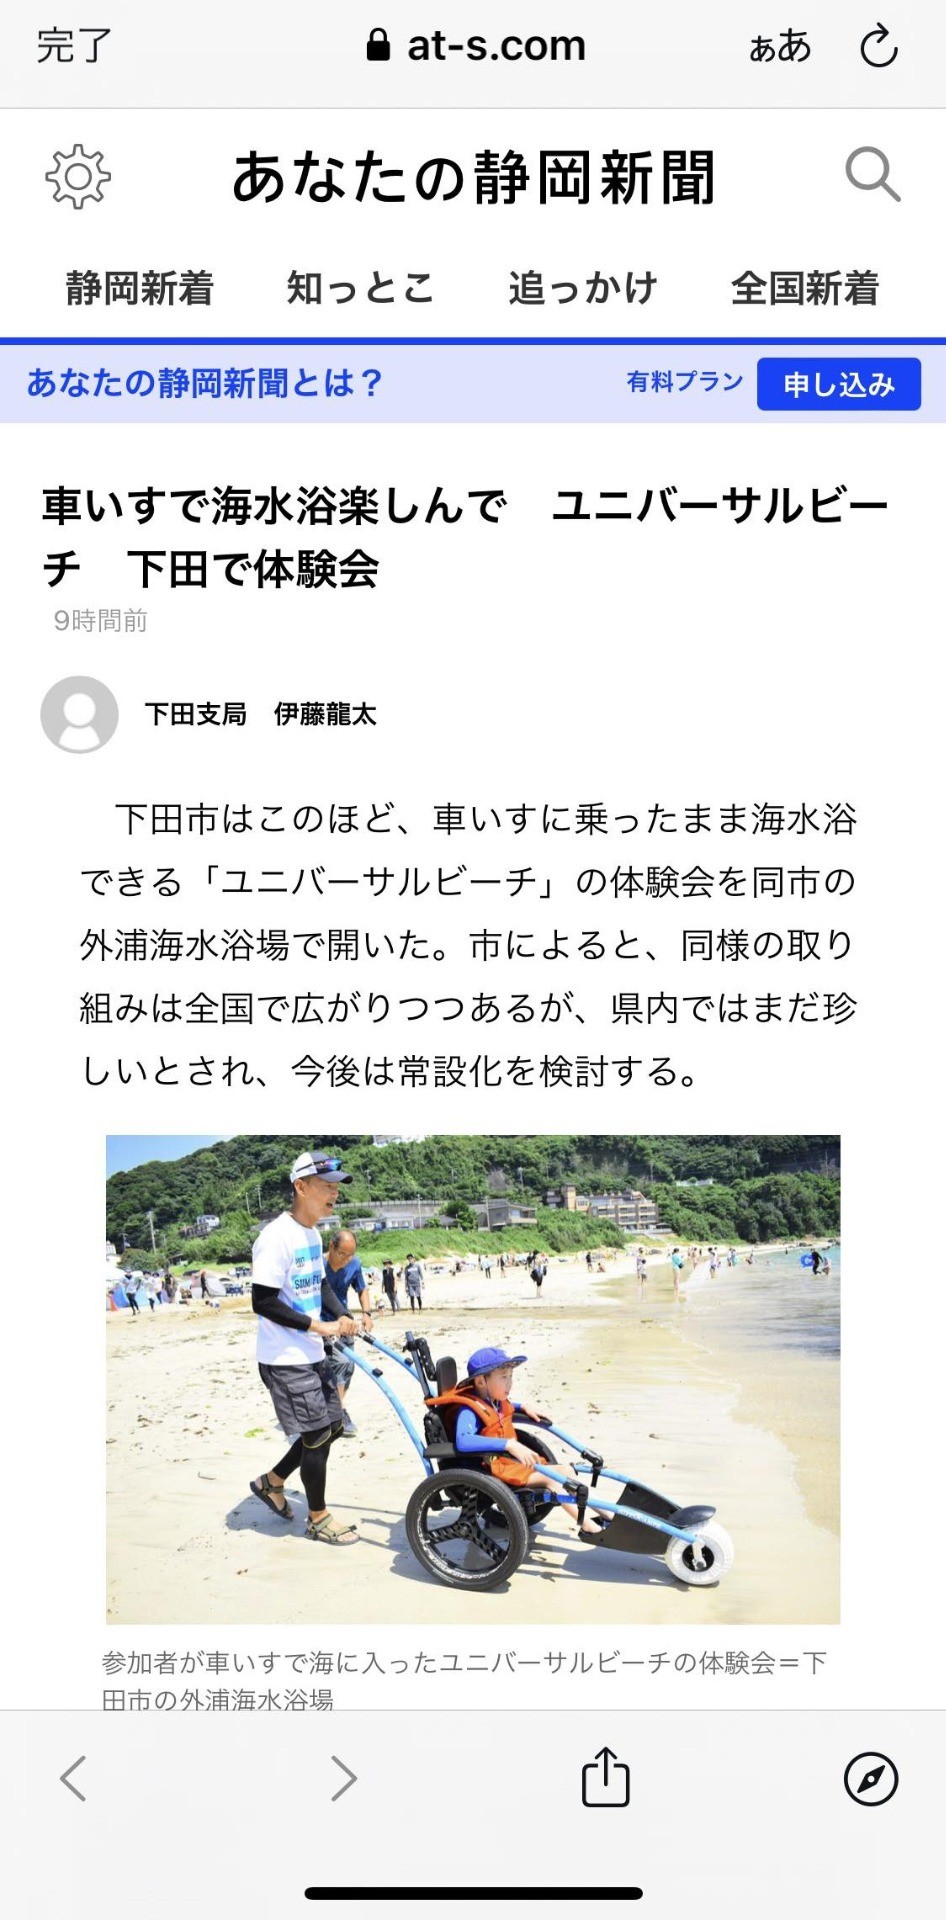 ユニバーサルビーチ体験会を静岡新聞さんに掲載いただきました！